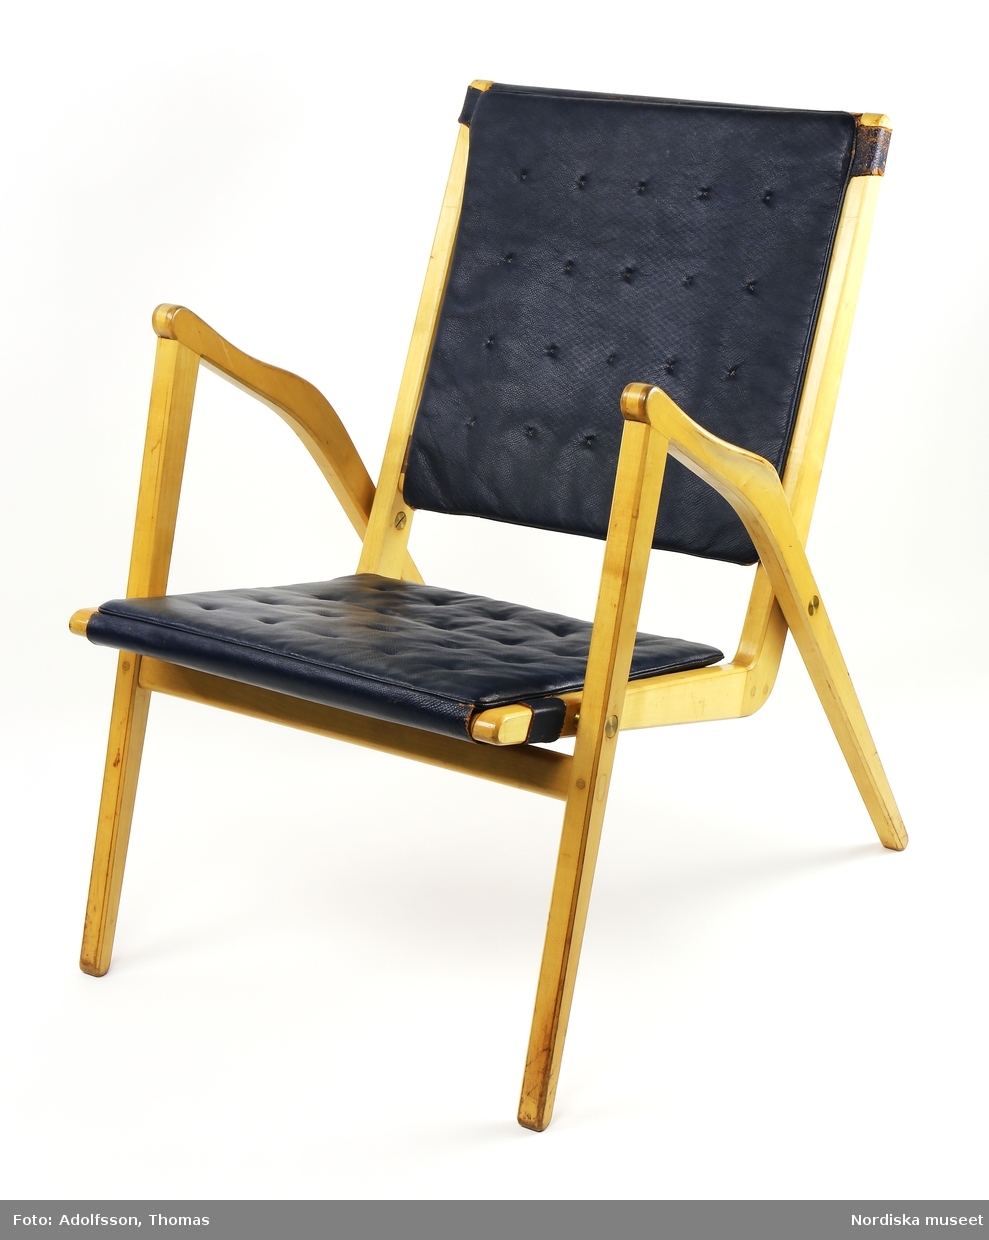 Stapelbar stol, karmstol, med stativ av klarlackad björk. Formpressad, perforerad sits och rygg av valnötsfaner. Sittdel och stativ sammansatta med mässingsbeslag av tryckknappstyp. Sammanfogning med slitsar som även ger en dekorativ verkan. Formgiven 1955 och sannolikt tillverkad samma år.
/Anna Arfvidsson Womack 2019-01-29